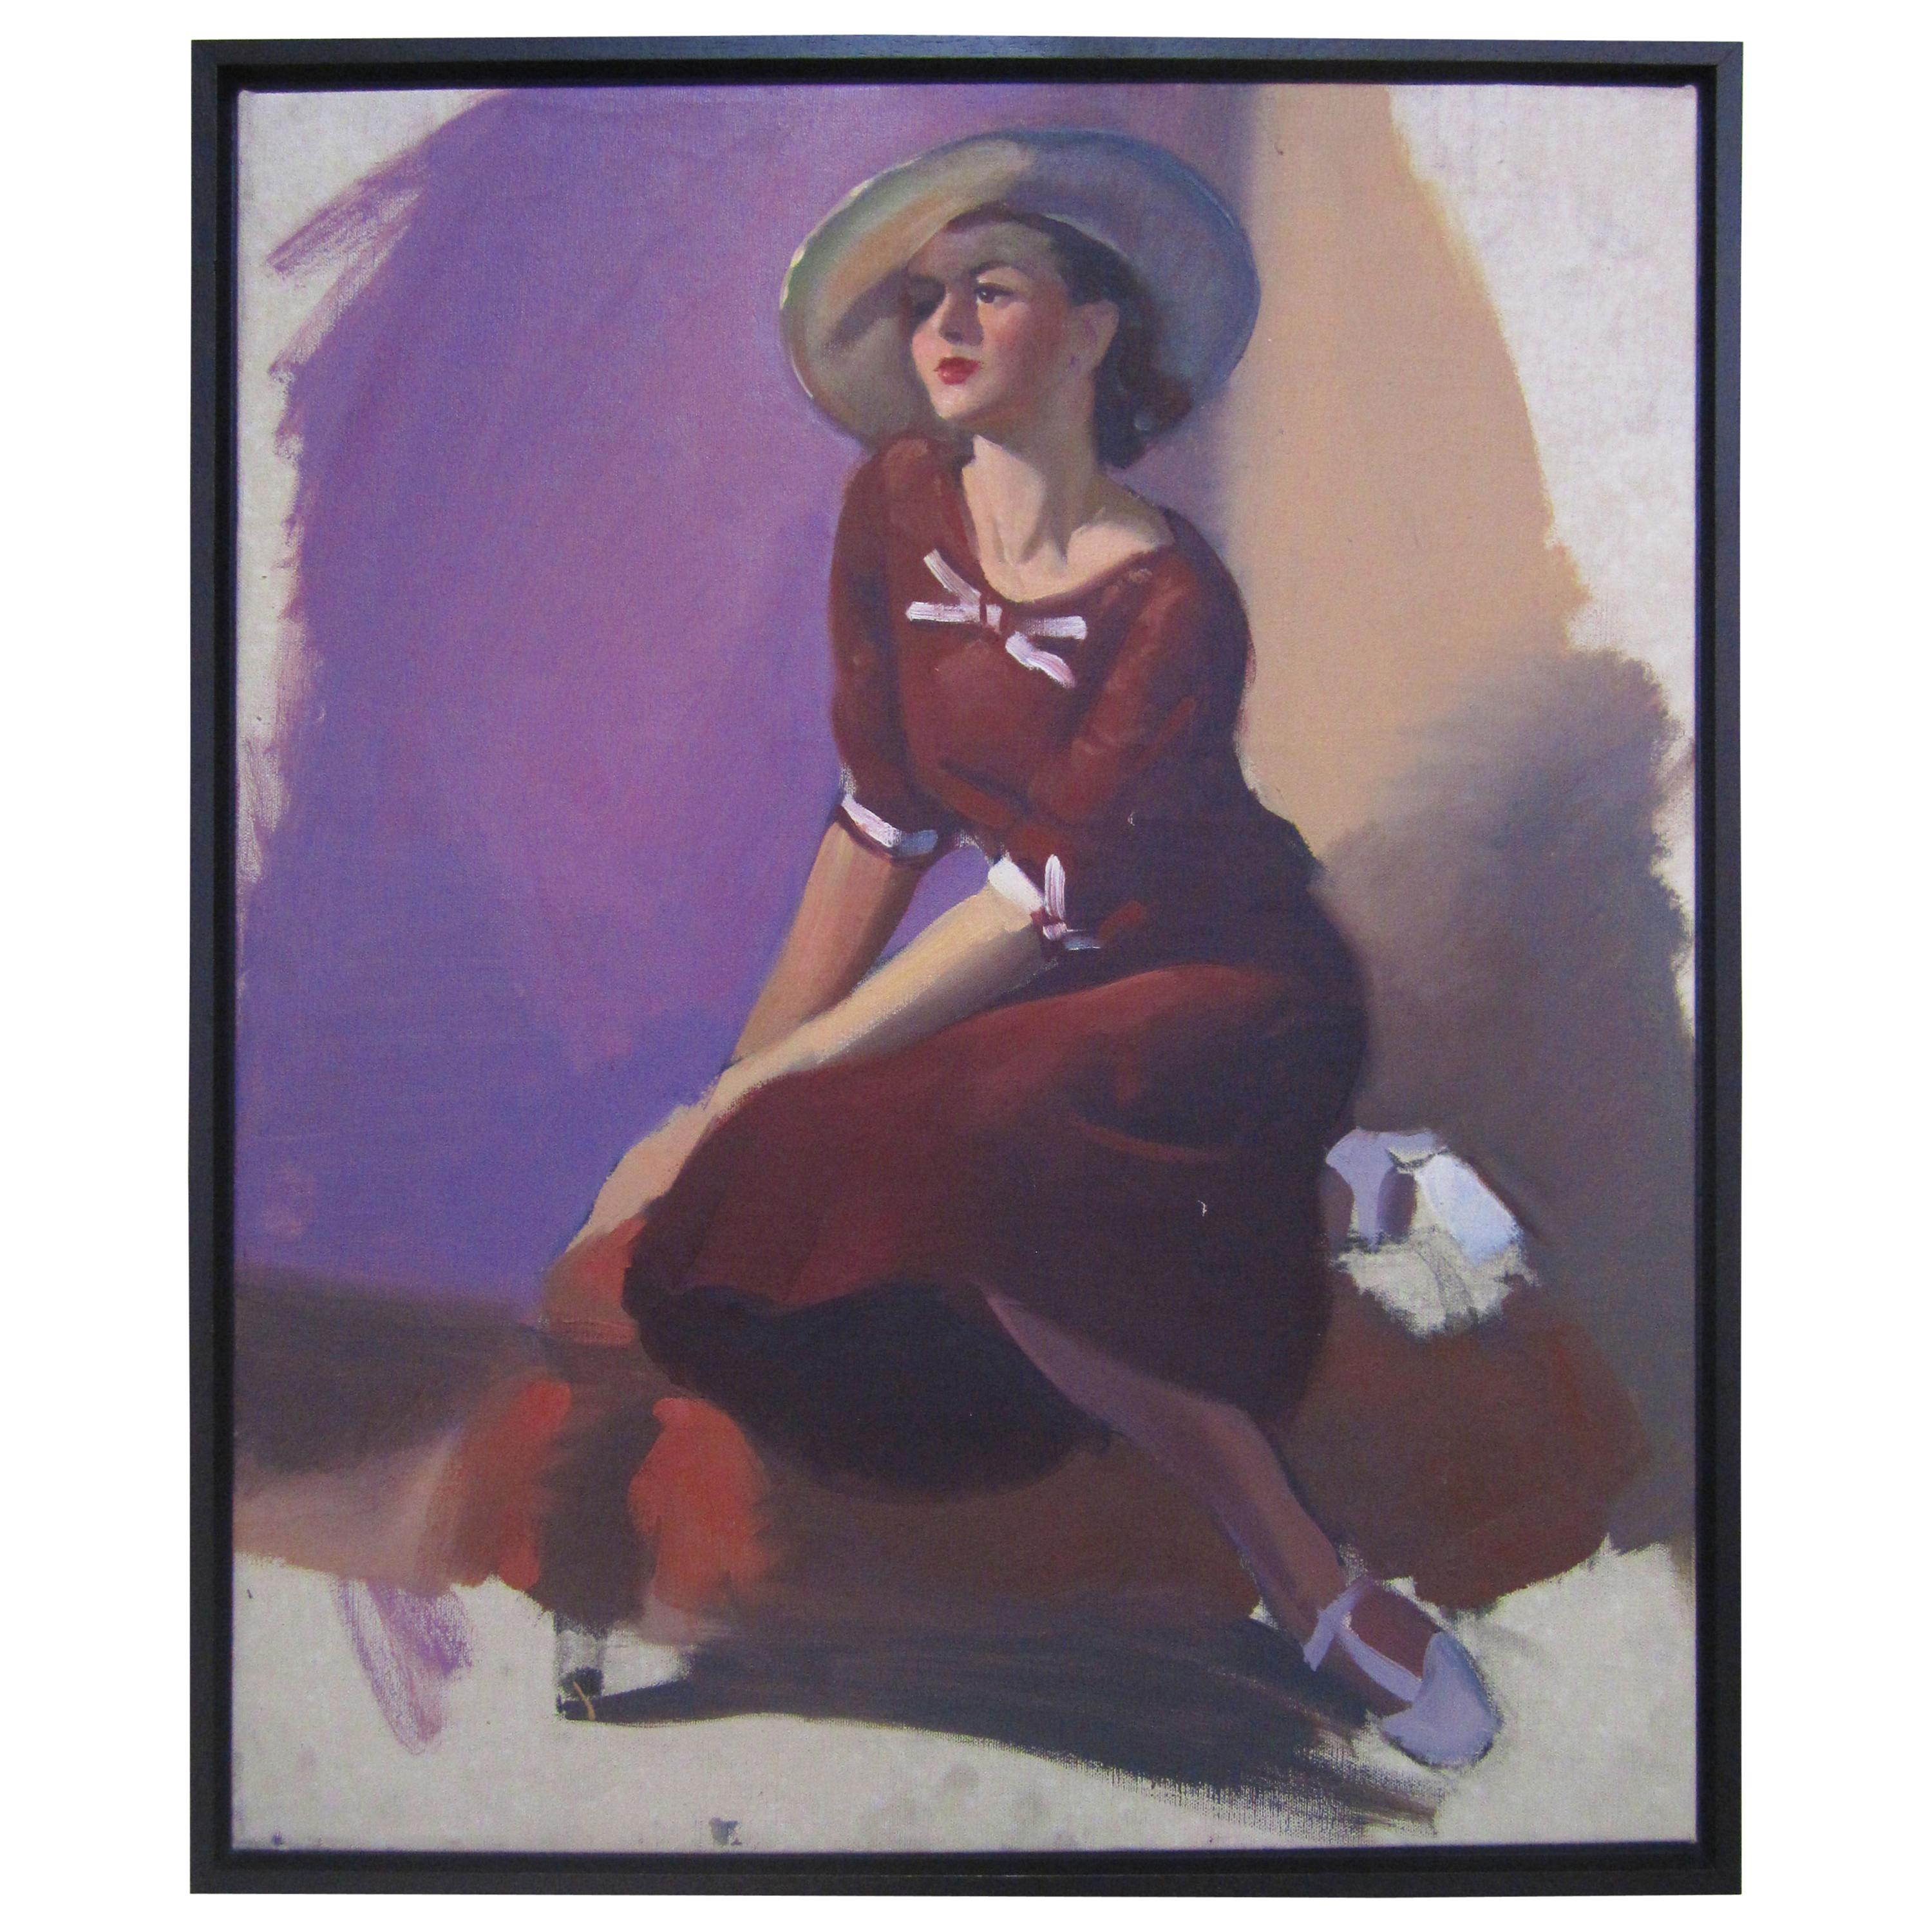 Unvollendetes Porträt einer jungen Dame in Violett, ca. 1940er Jahre